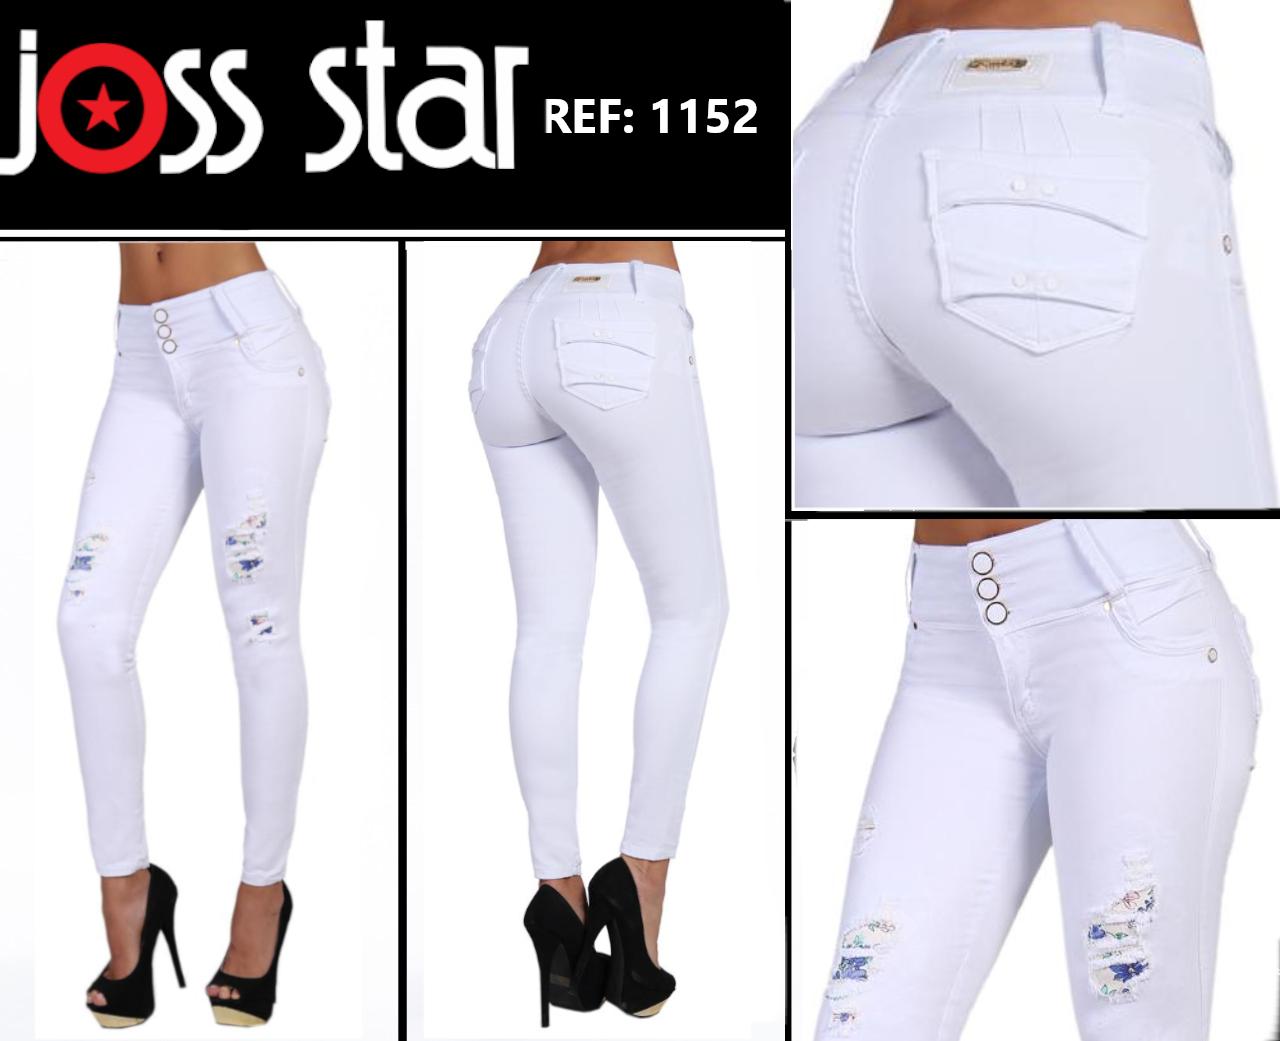 Comprar Pantalón Vaquero de Dama, Diseño Exclusivo Colombiano Marca Joss Star Color Blanco